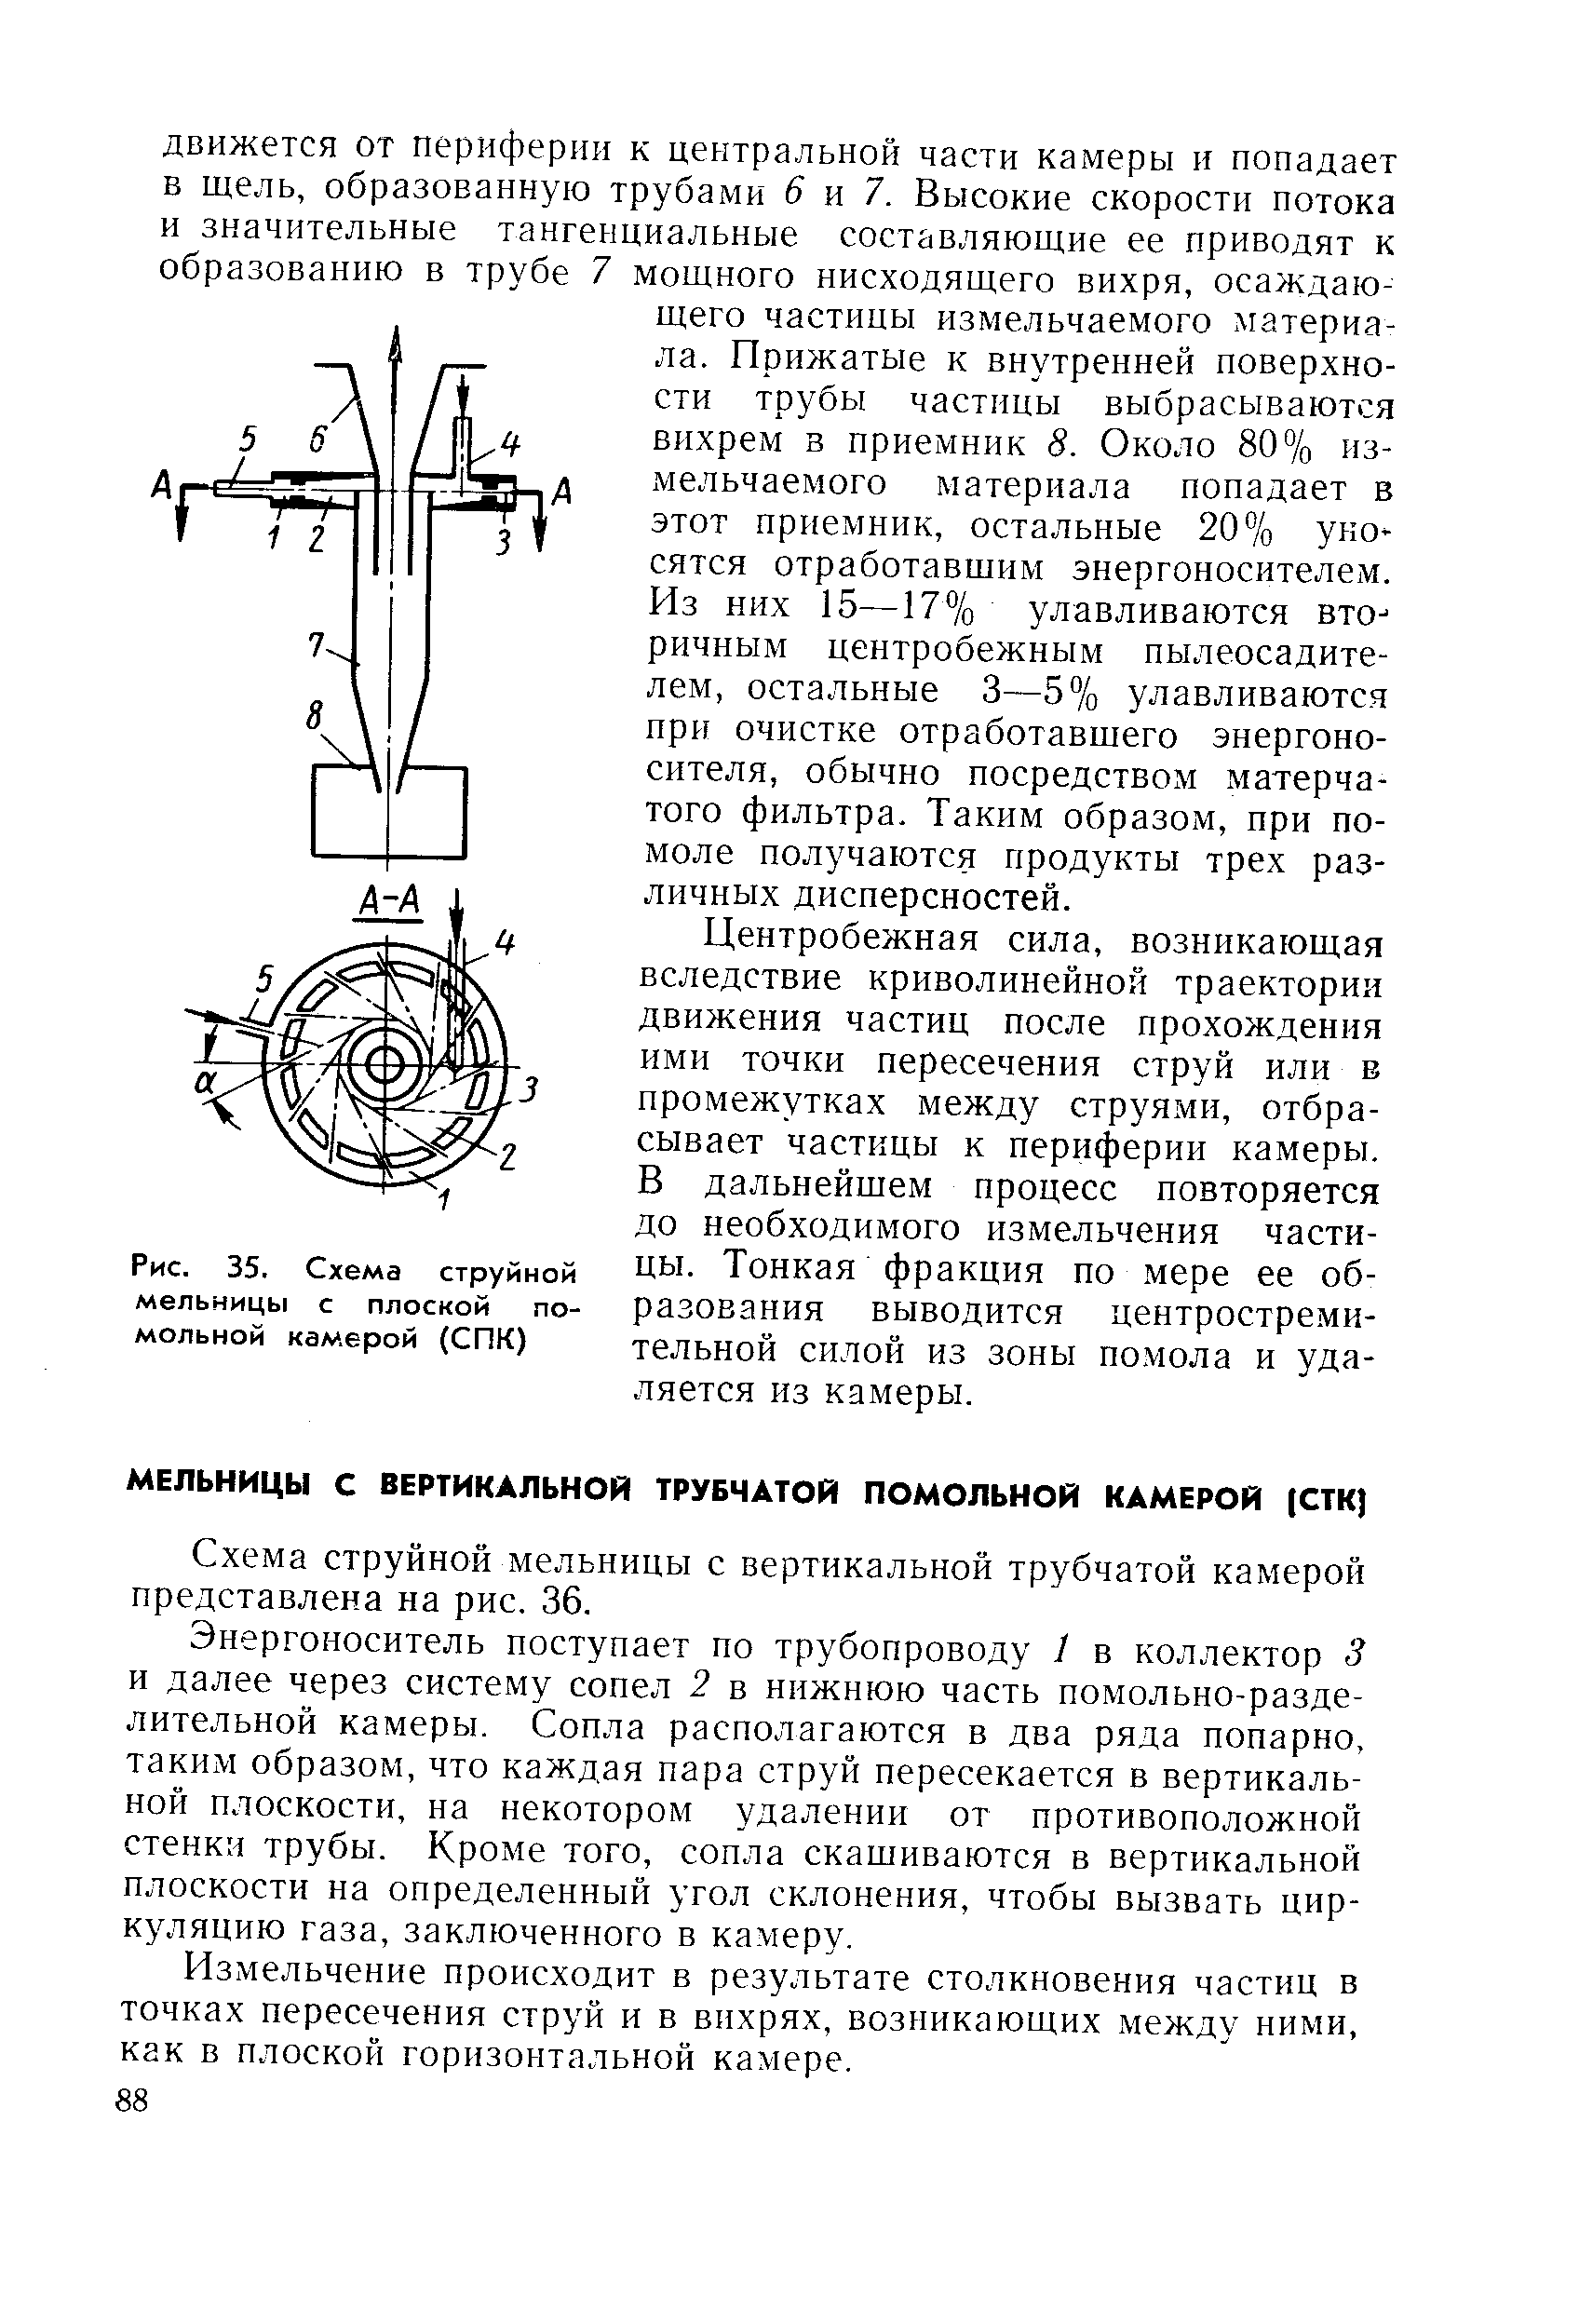 Схема струйной мельницы с вертикальной трубчатой камерой представлена на рис. 36.